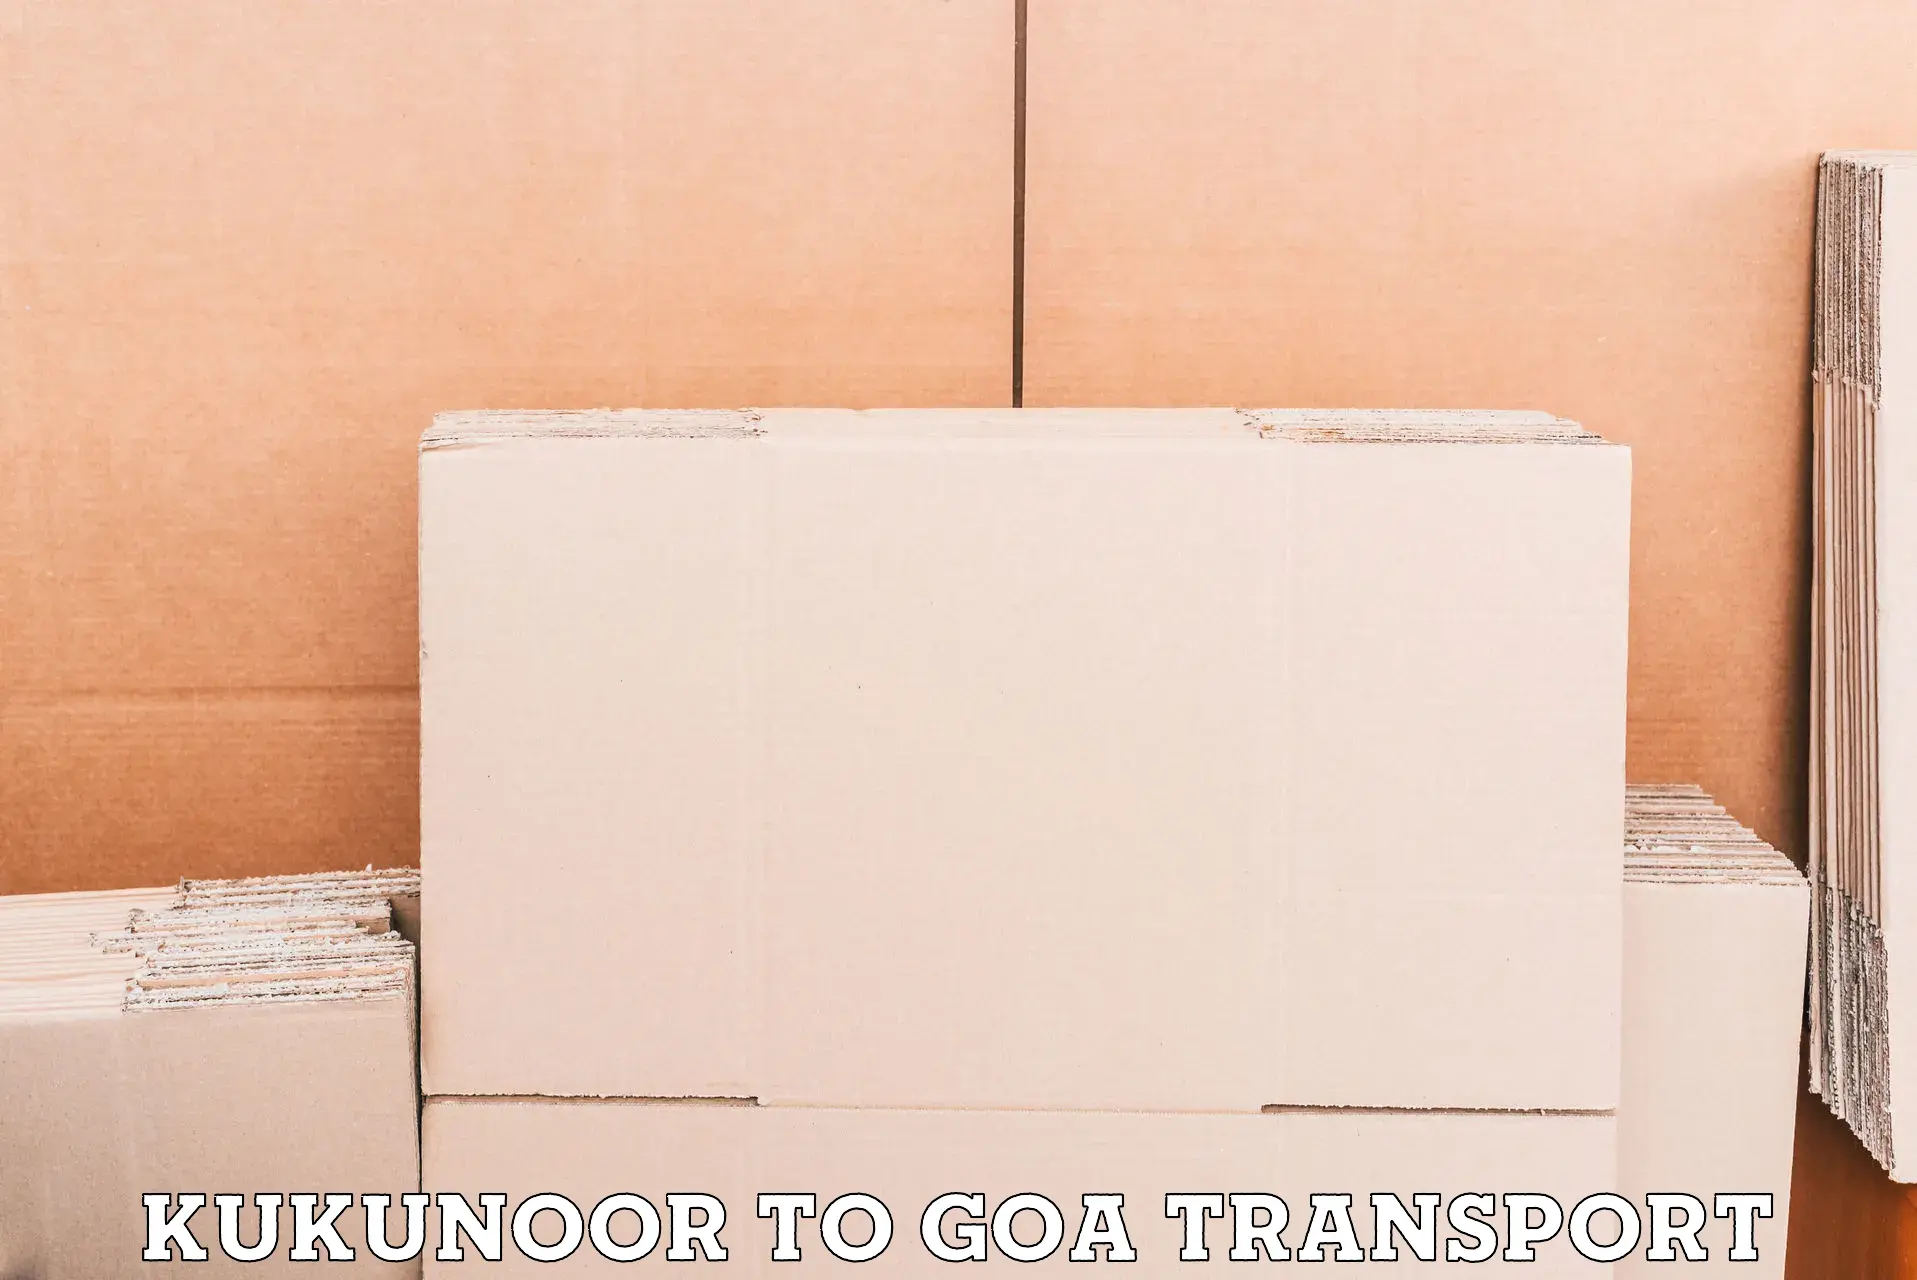 Bike shifting service Kukunoor to South Goa